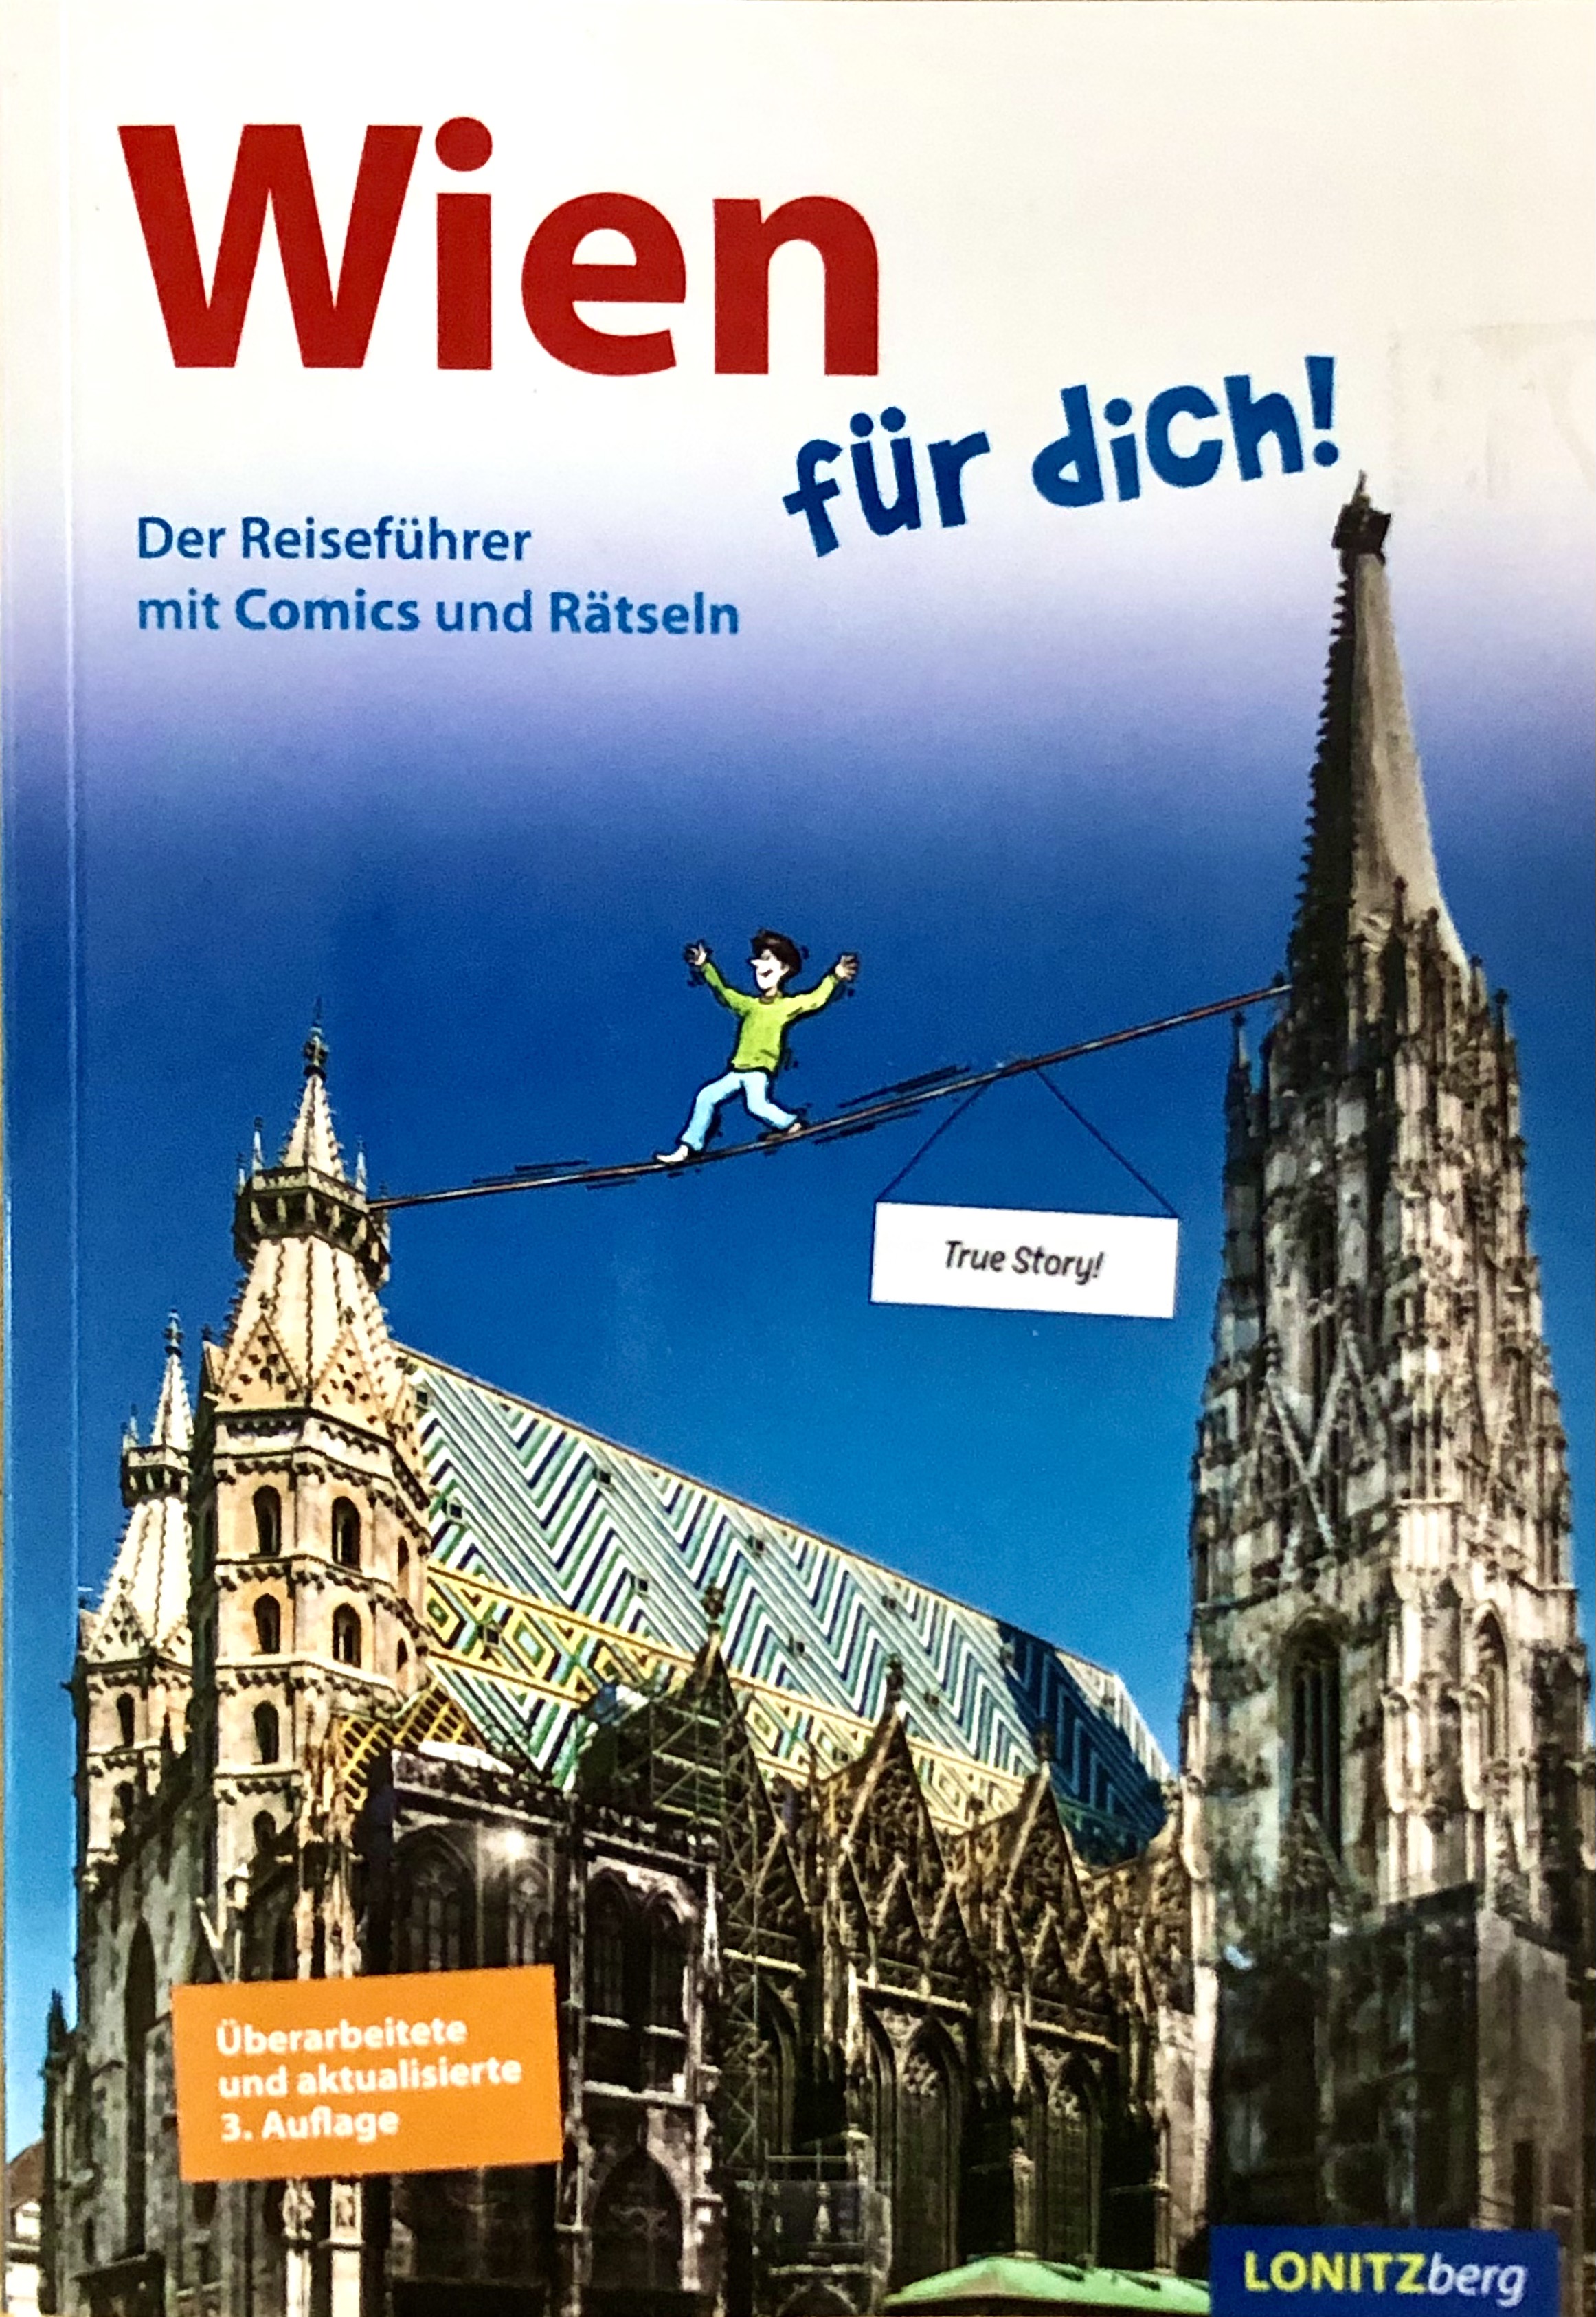 Ein Wien-Reiseführer für Kinder, die an den vielen Fakten, Comics und Rätseln ihren Spaß haben werden!